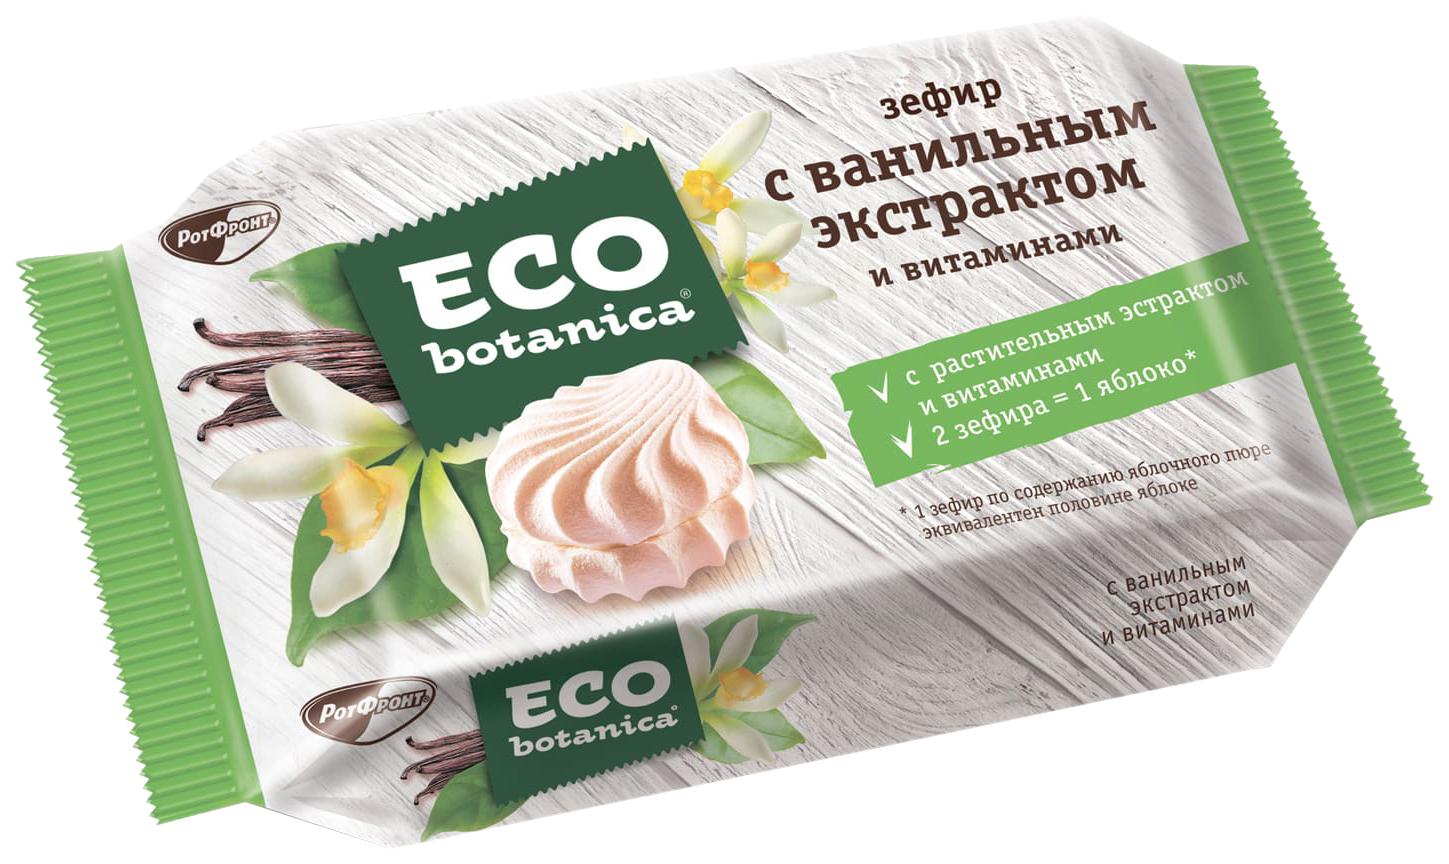 Зефир Eco-botanica с ванильным вкусом 250г - интернет-магазин Близнецы